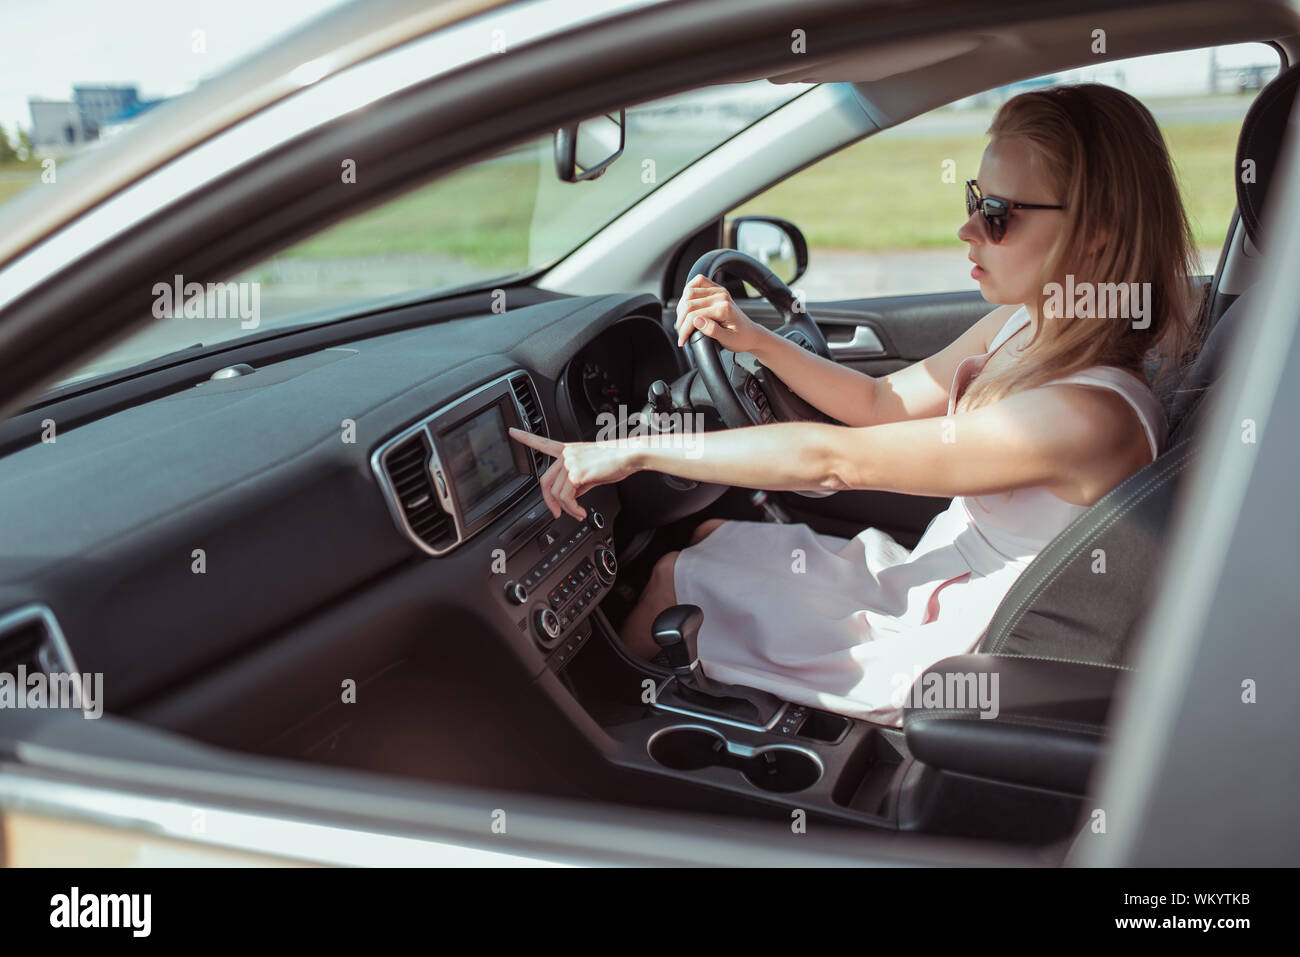 Femme au volant d'une voiture, sélectionne la navigation sur écran d'affichage s'allume, l'assistant vocal, sélectionne l'application sur l'écran de la carte de navigation dans Banque D'Images